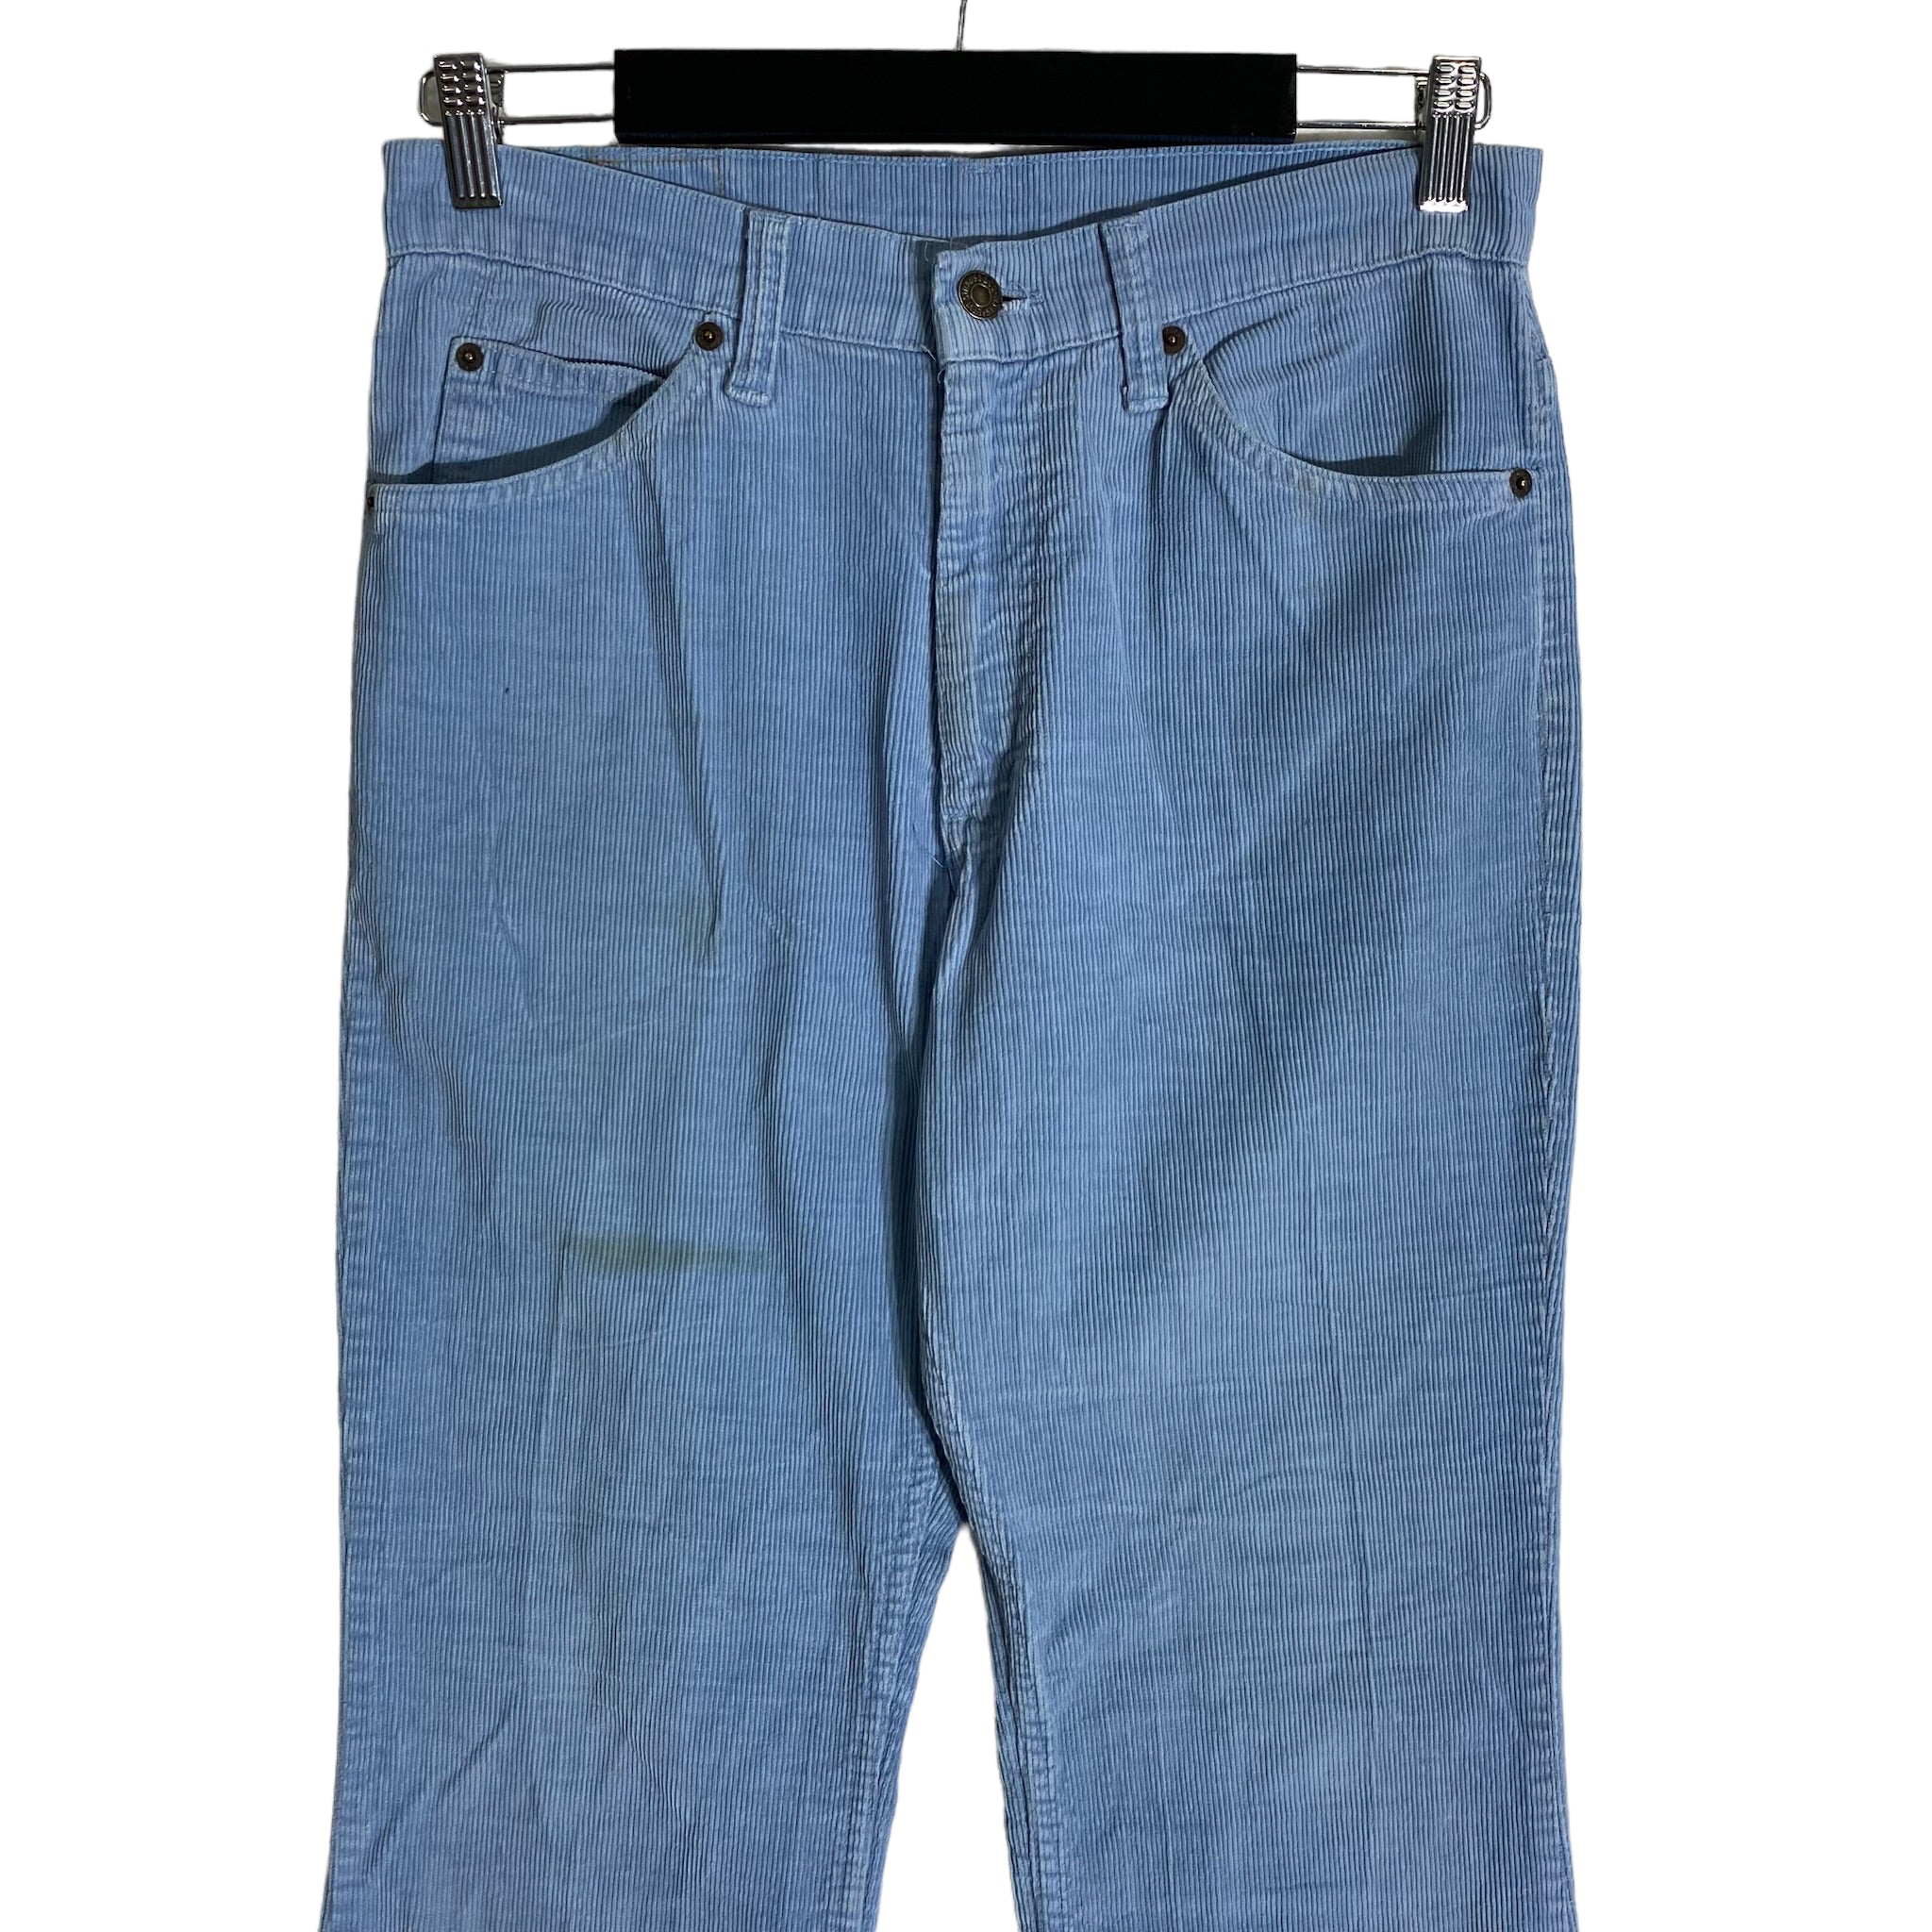 Vintage Levi's 517 Corduroys Pants